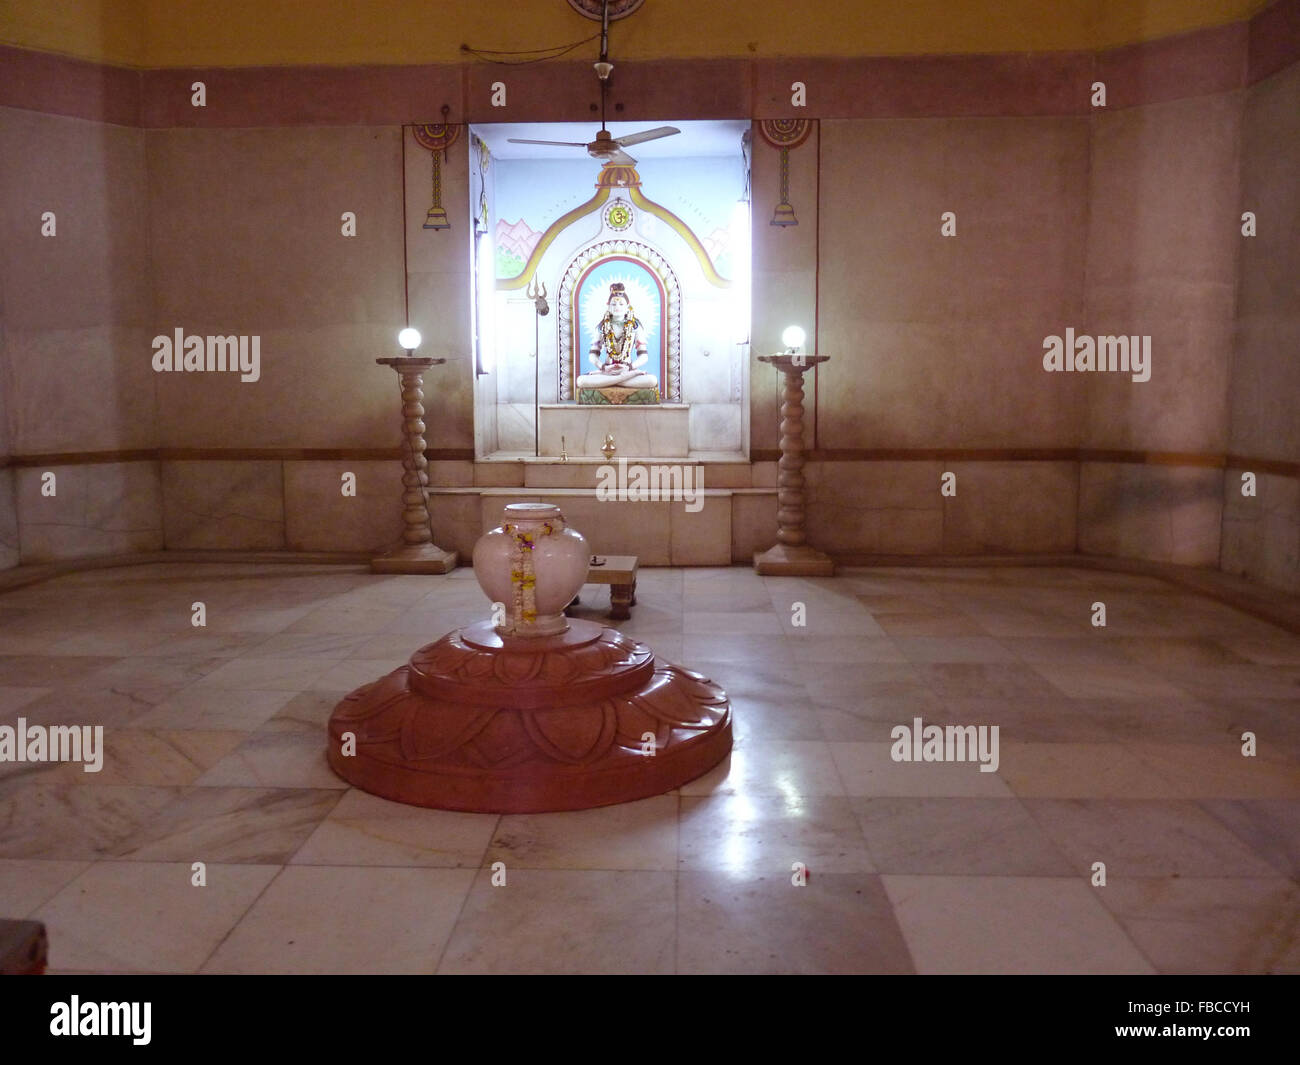 Estatua De Shiva En El Interior De Un Templo Hindú En Varanasi Fotografía De Stock Alamy 0252